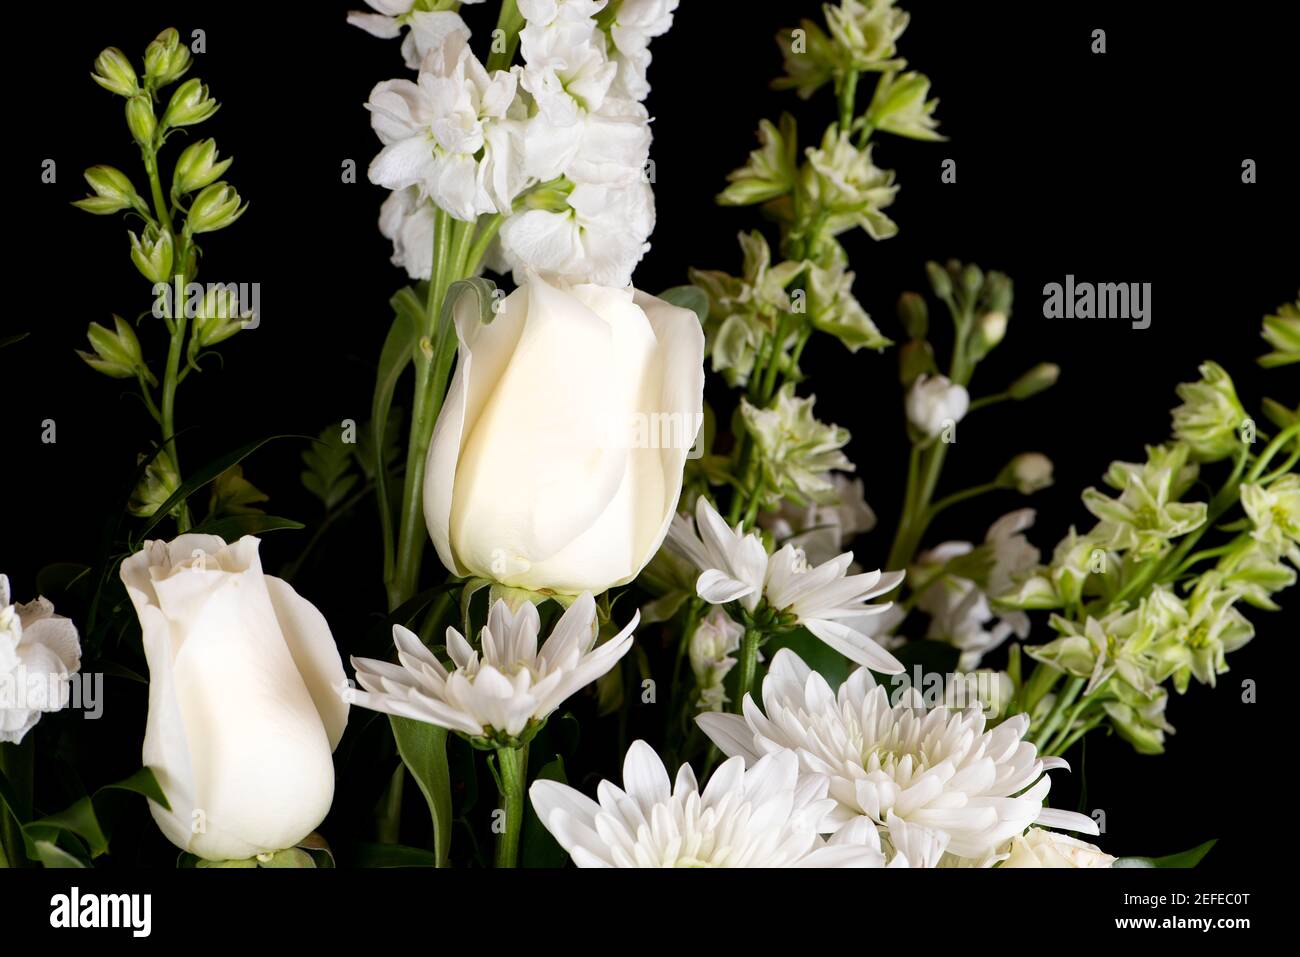 Beau bouquet d'une variété de fleurs blanches sur un arrière-plan noir Banque D'Images